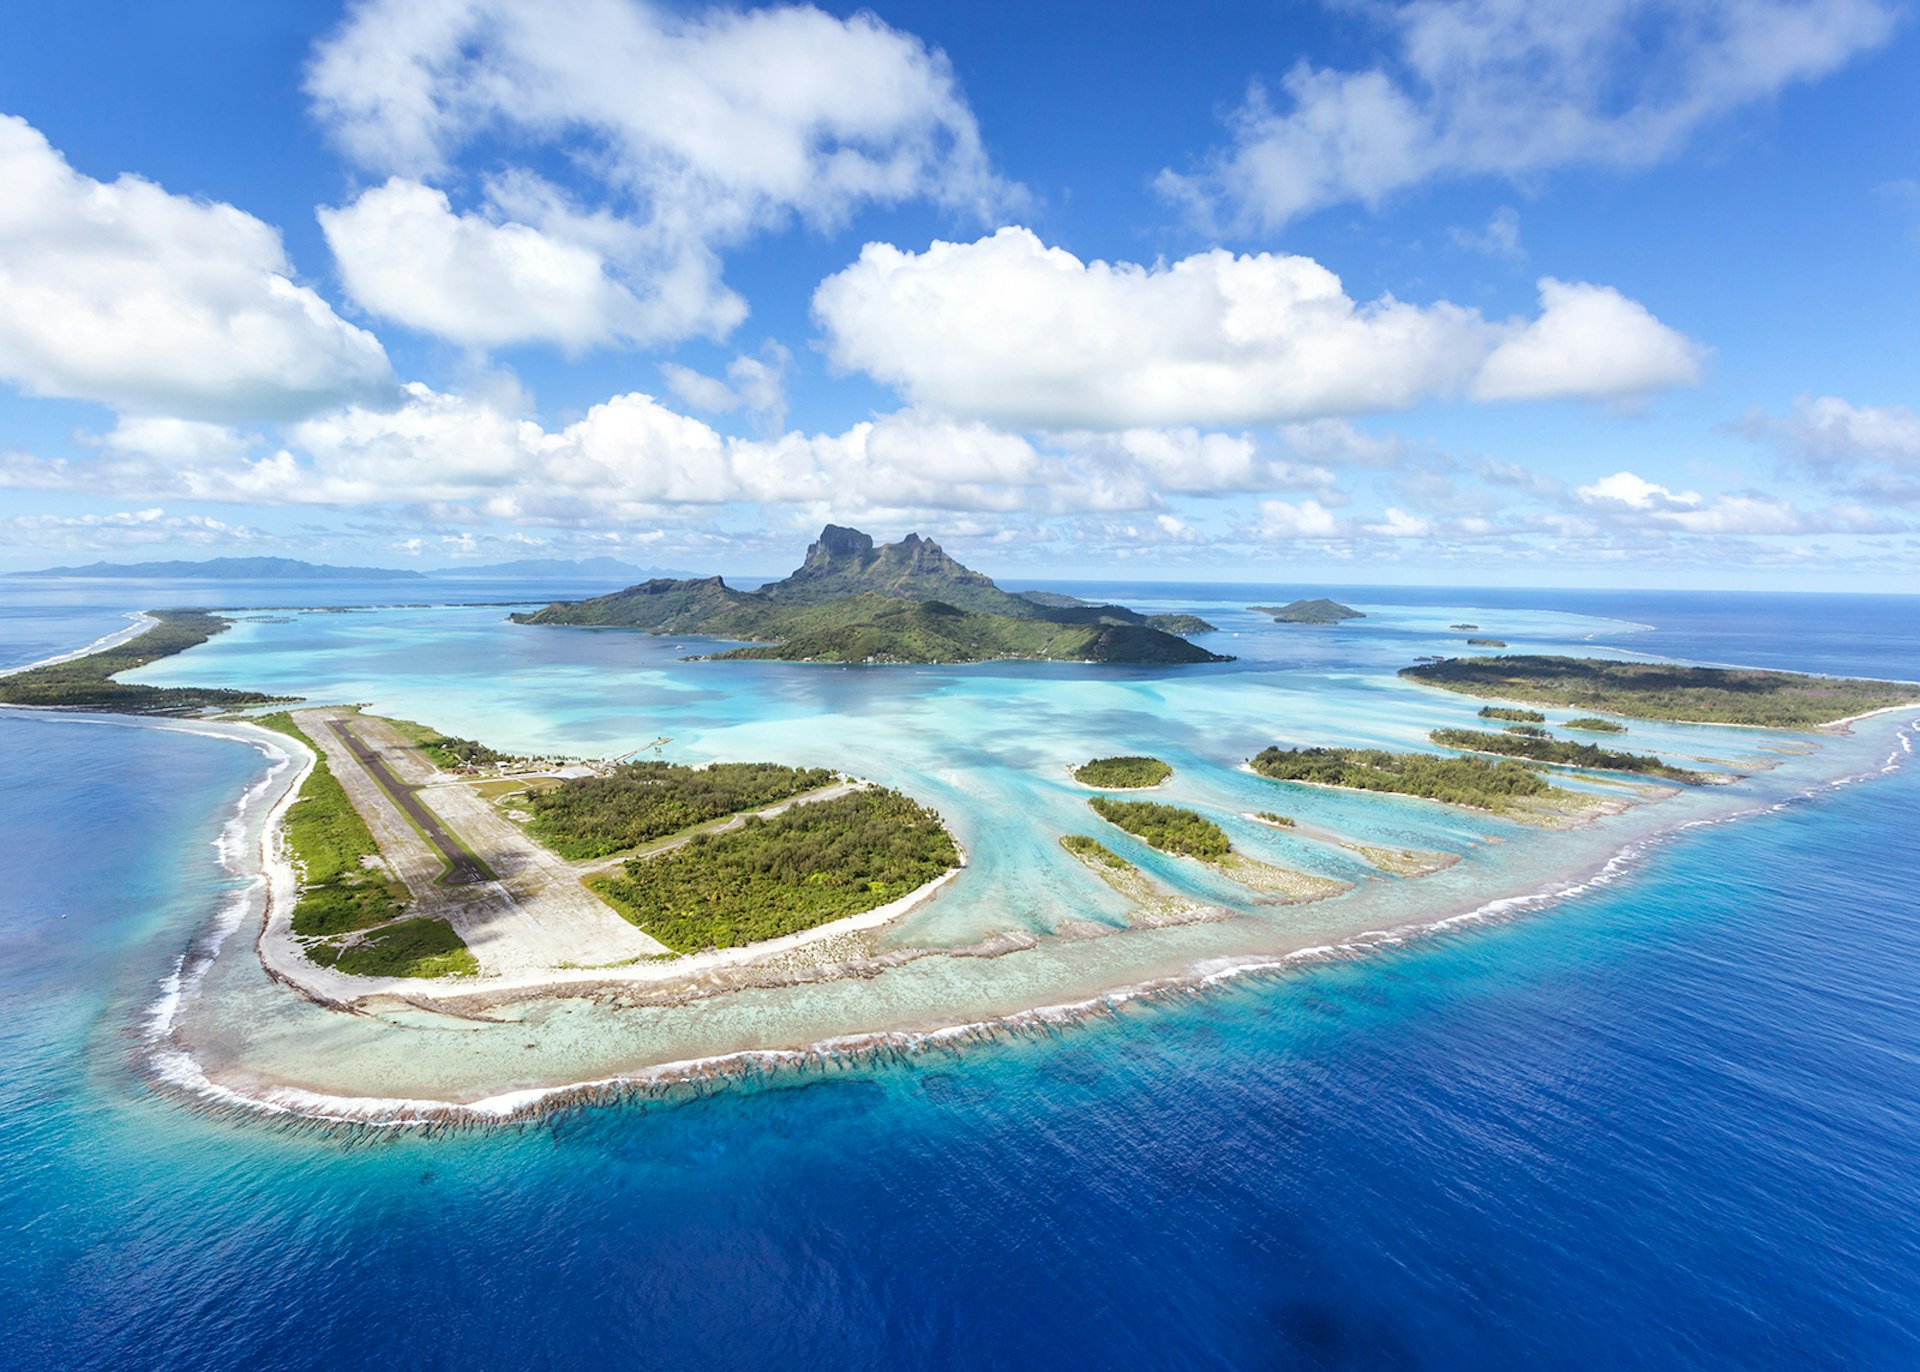 An aerial view of Bora Bora, French Polynesia